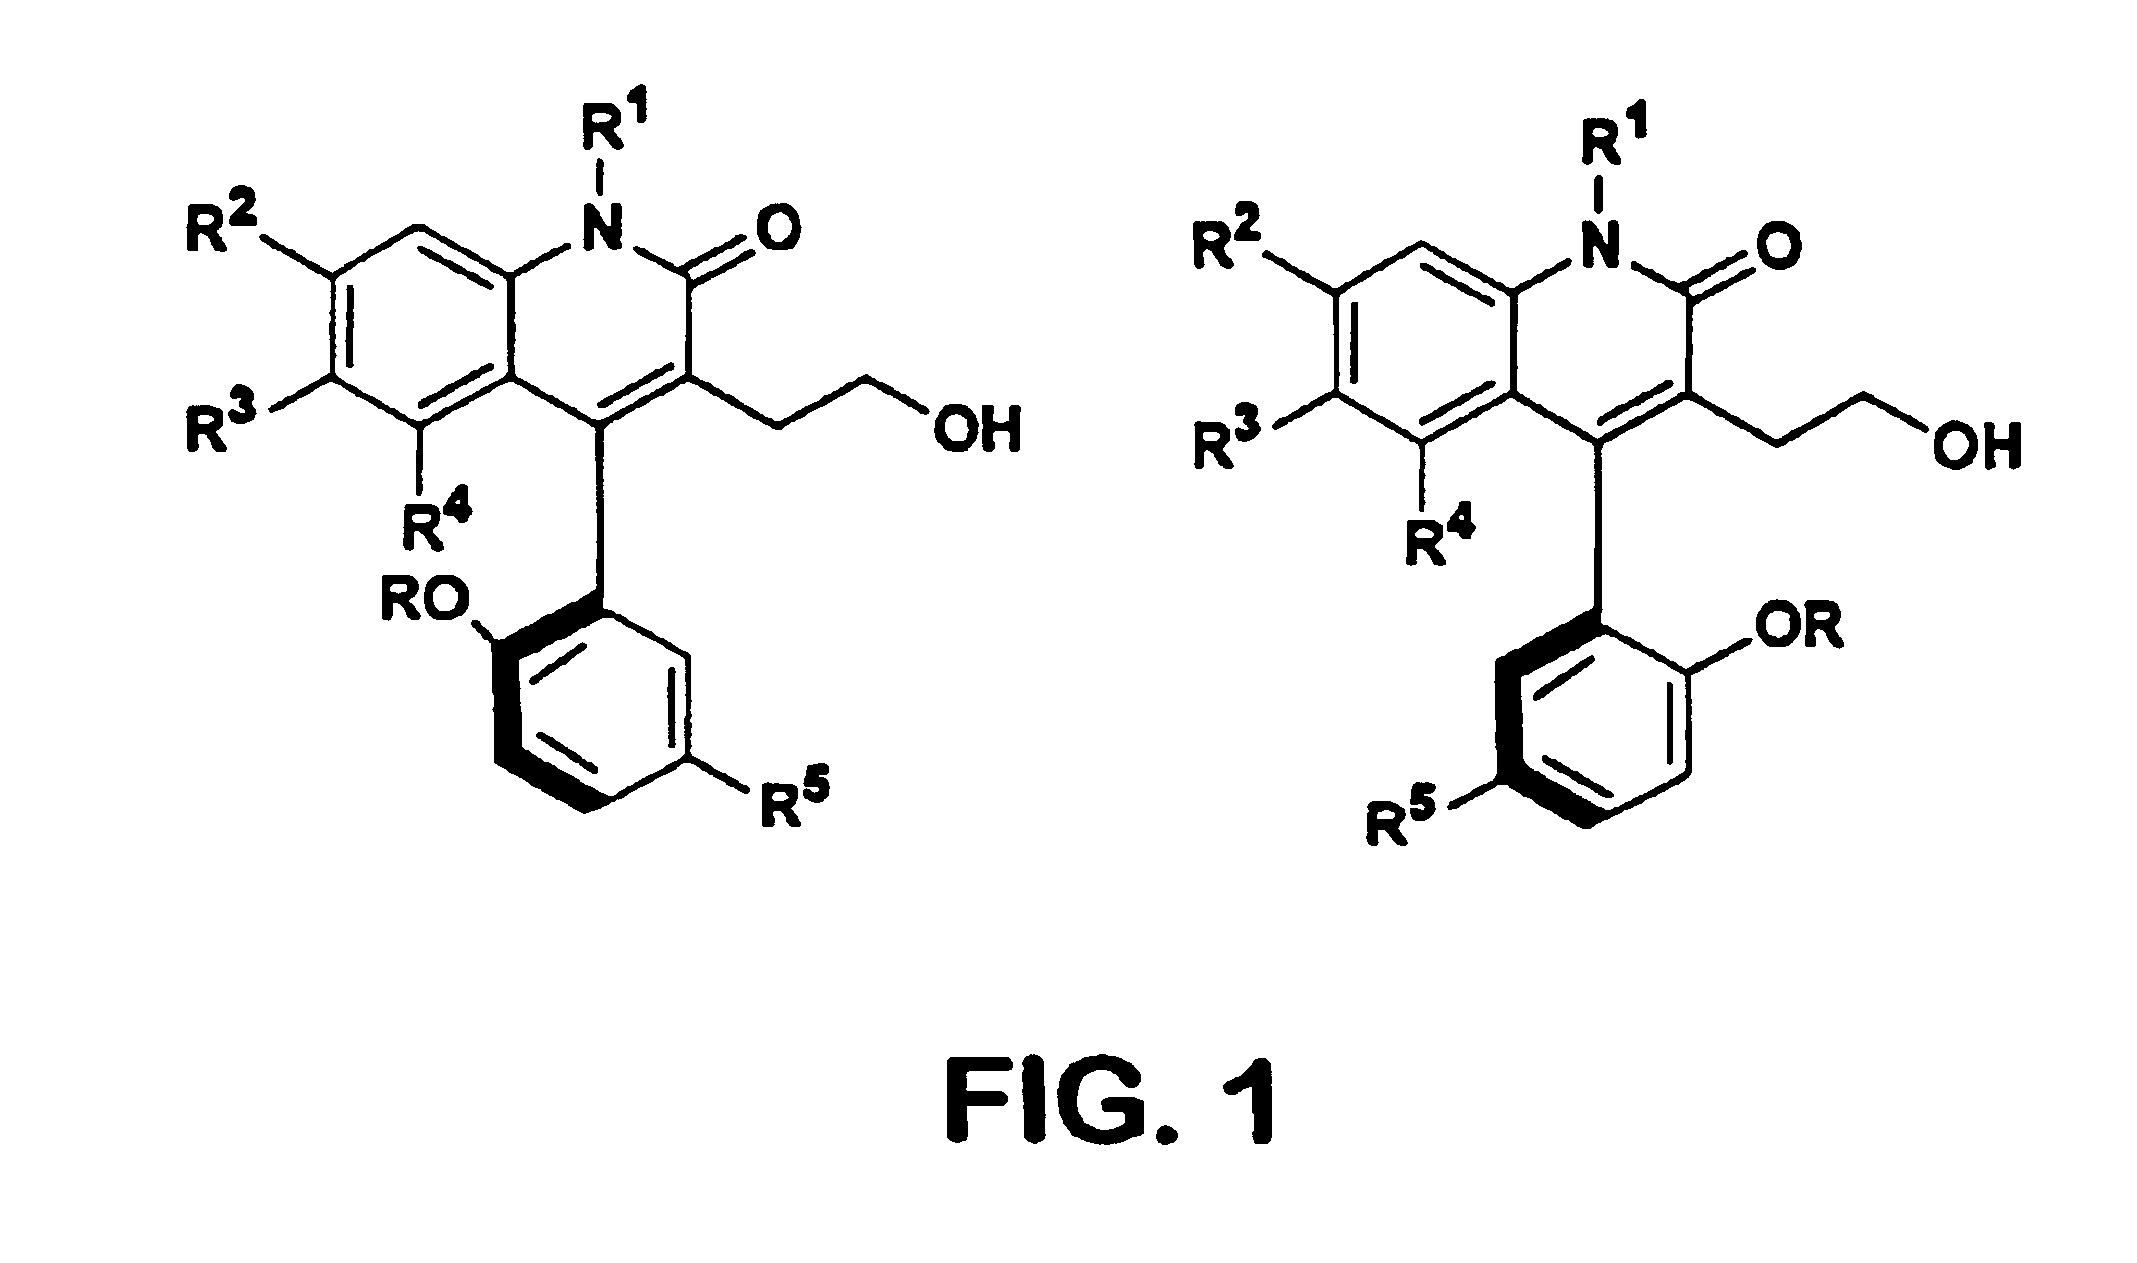 Atropisomers of 3-substituted-4-arylquinolin-2-one derivatives